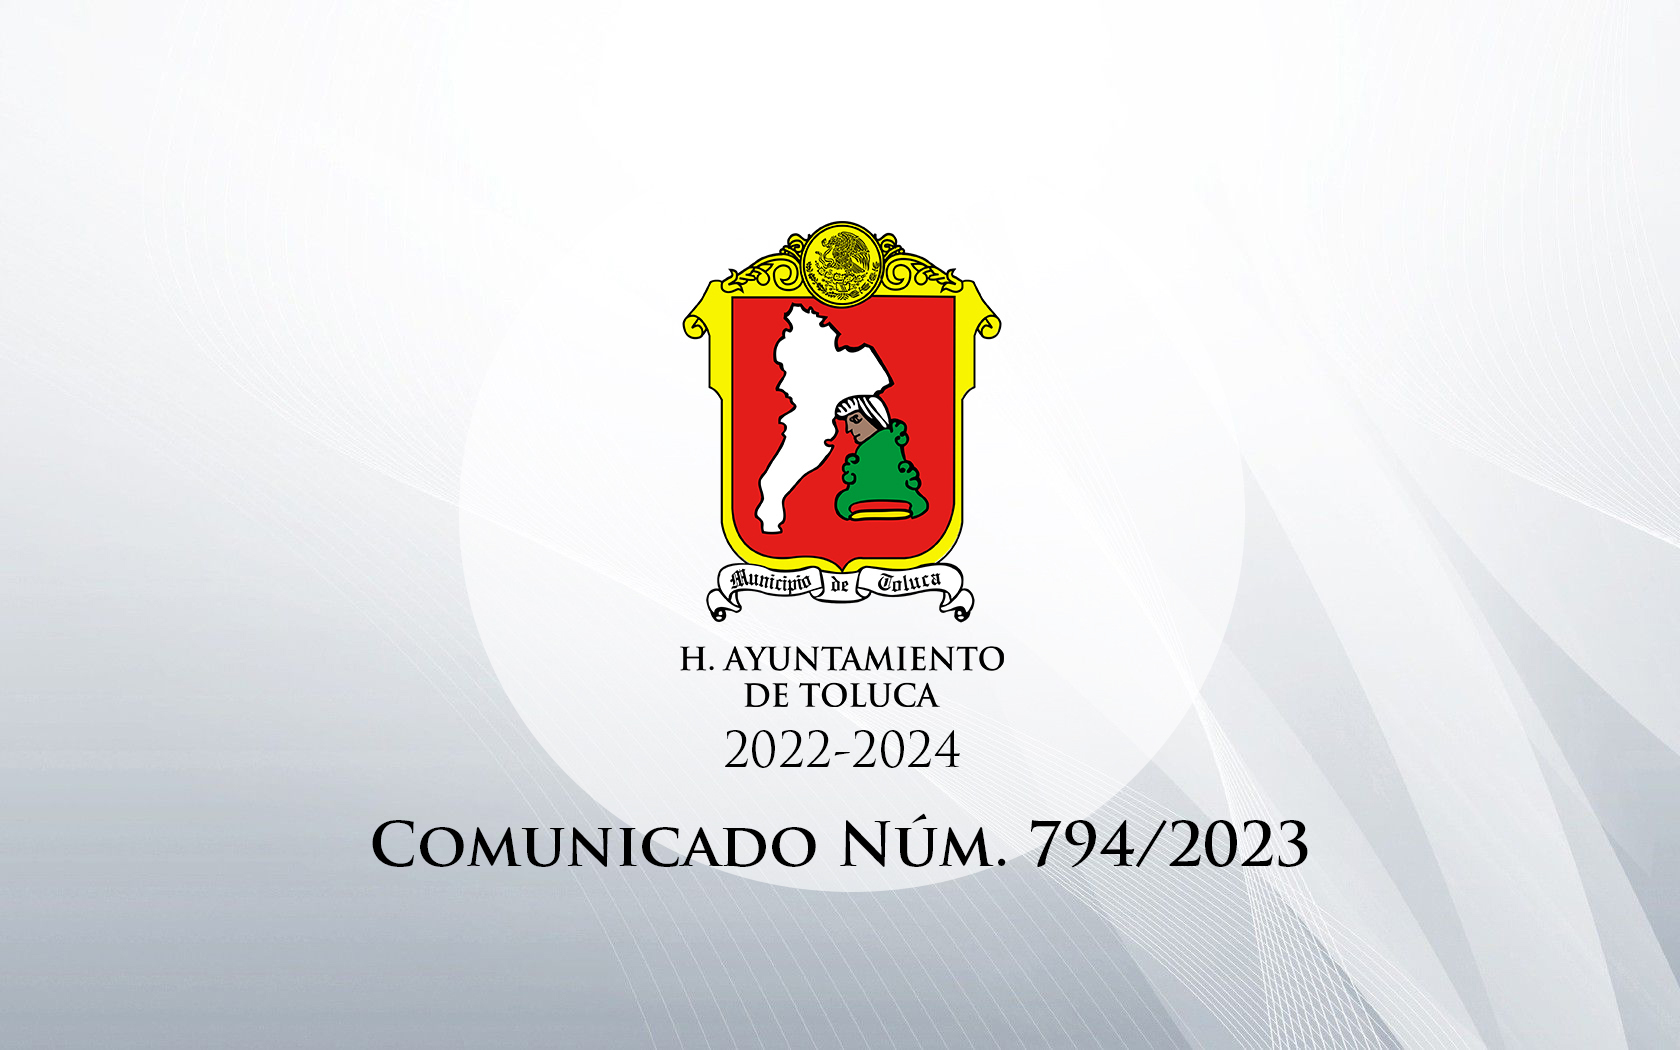 Comunicado Núm. 794/2023